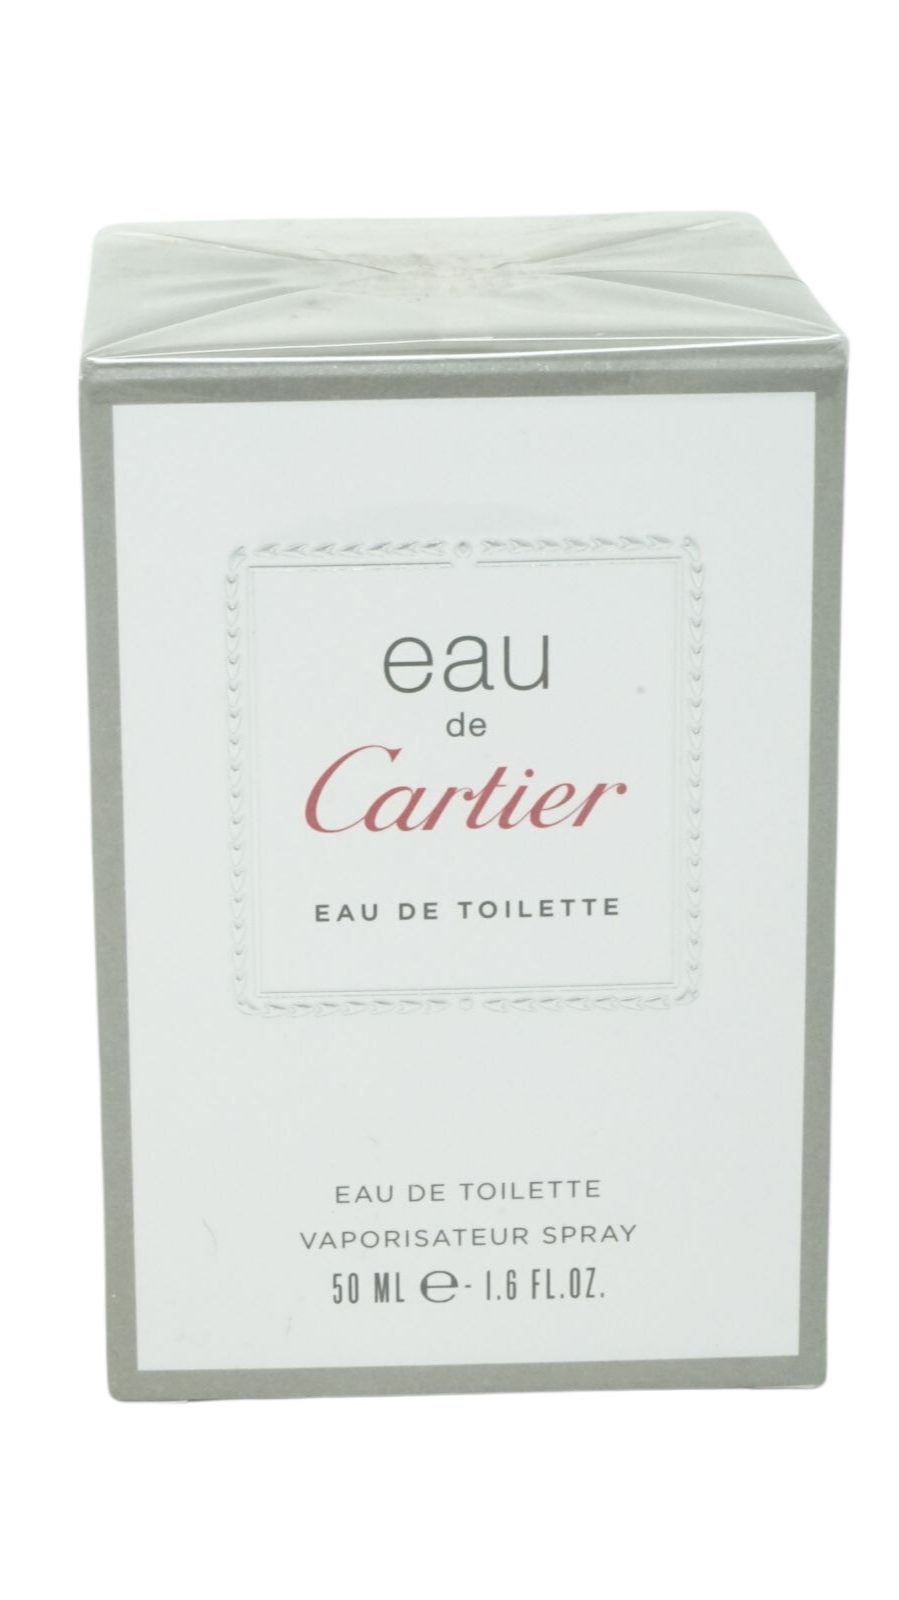 Cartier Toilette de Cartier de Eau Eau Eau Toilette 50ml Spray Cartier de